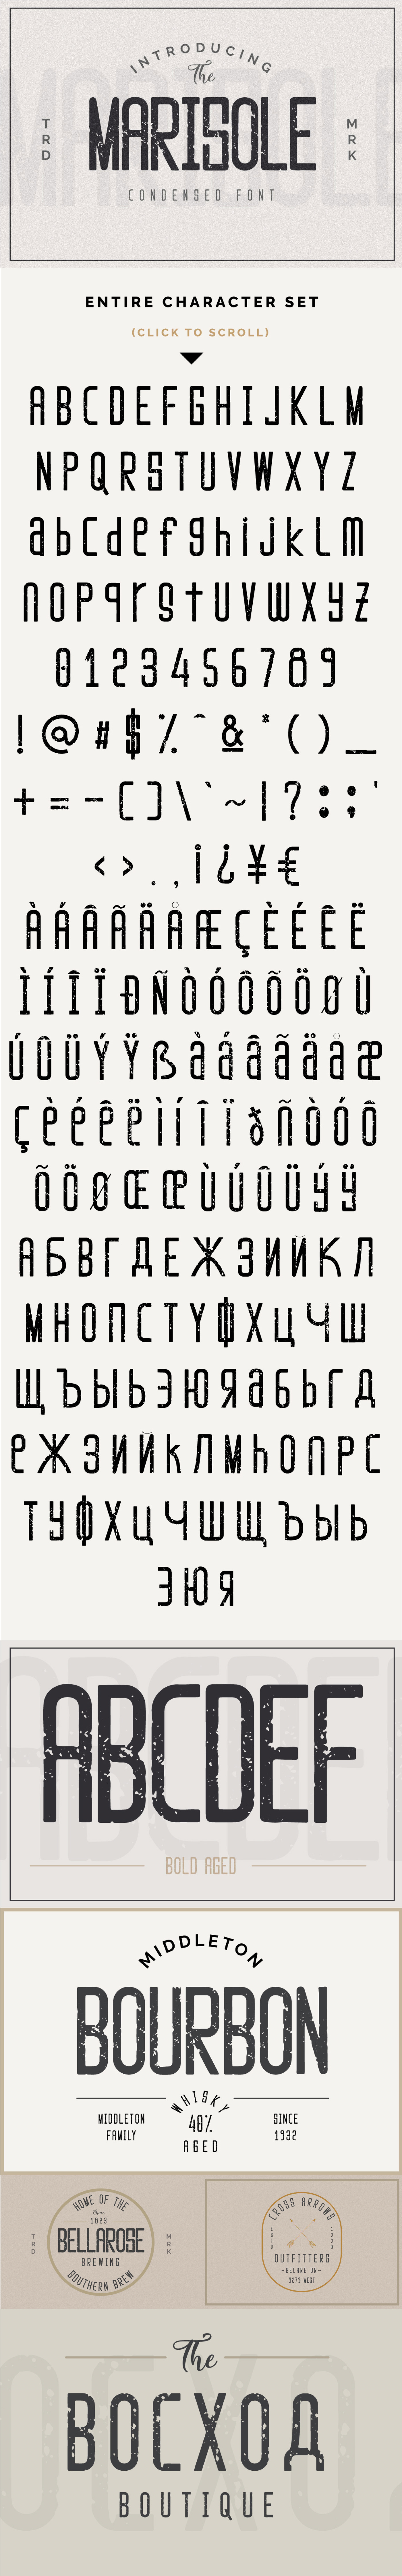 free Free font freebie Font Freebie free type Typeface vintage sans serif textured font Retro